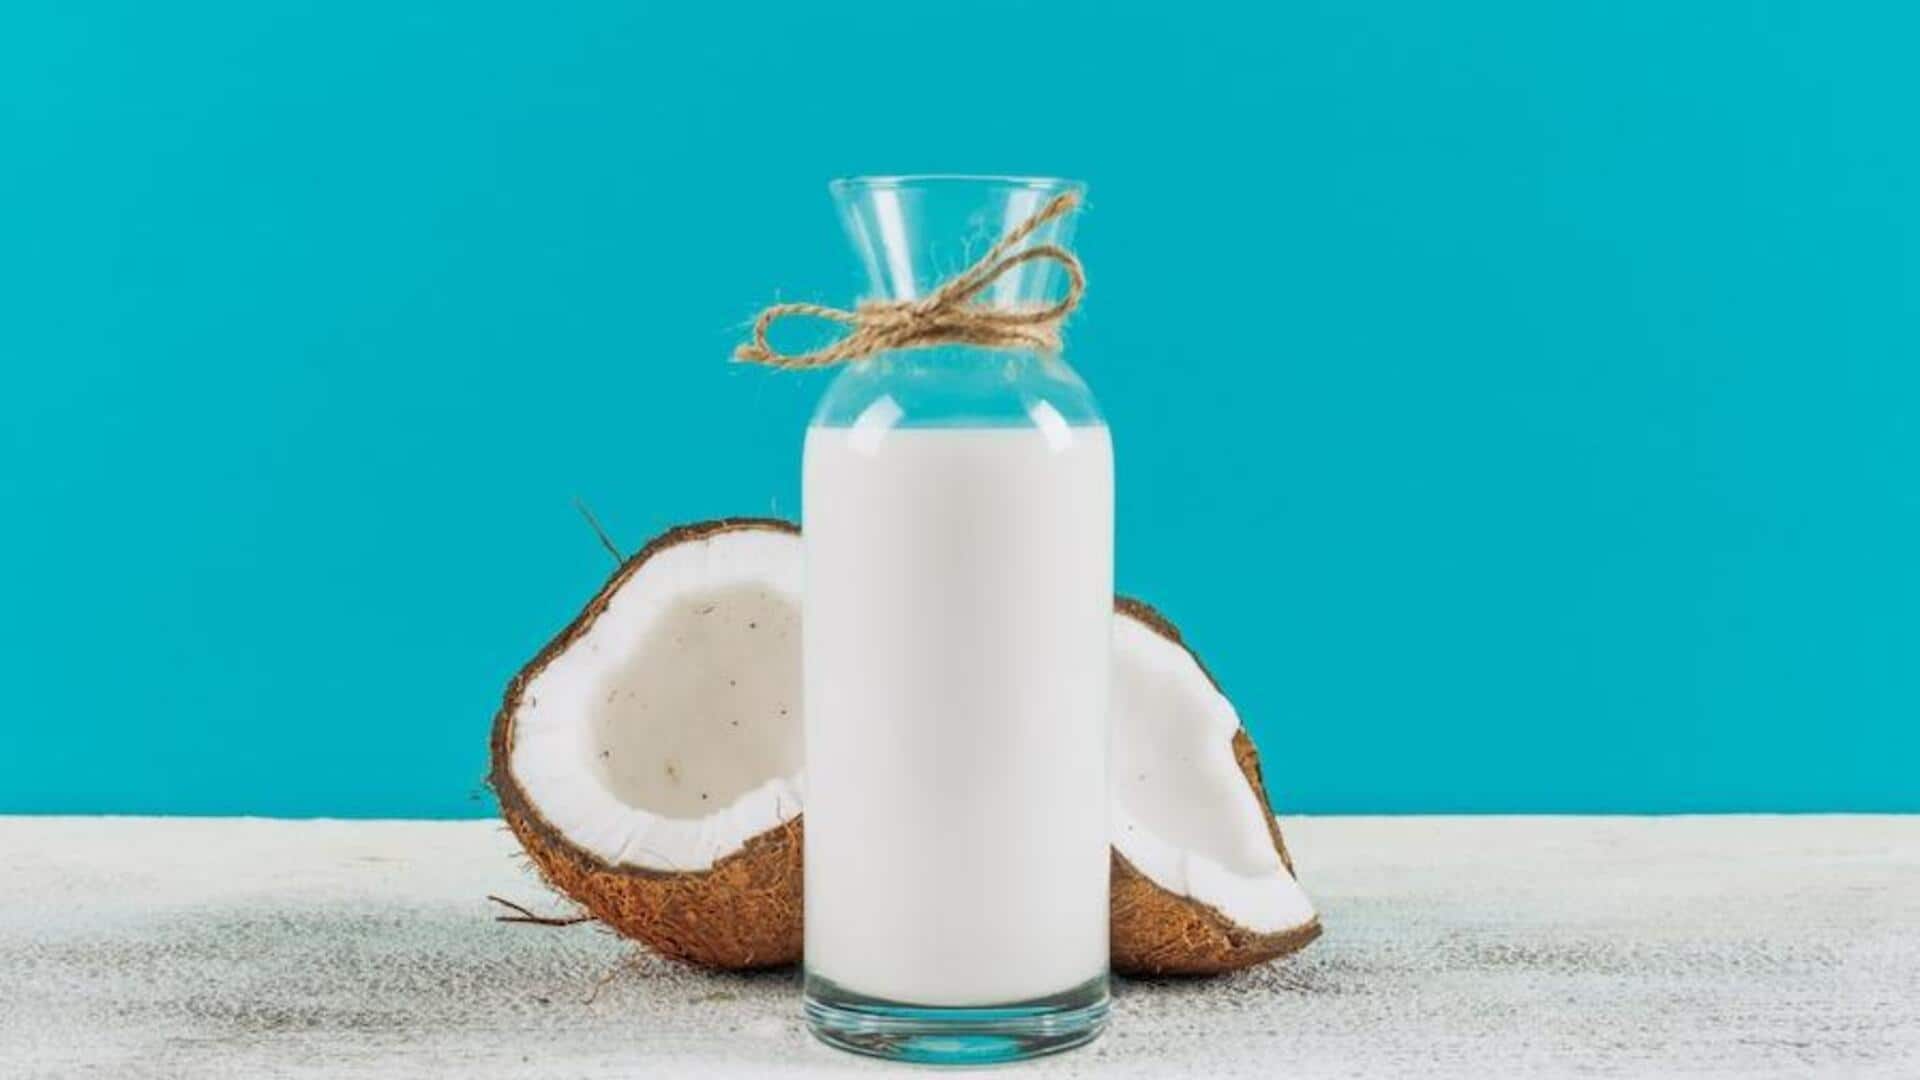 नारियल के दूध के इस्तेमाल से मिलते हैं ये 5 मुख्य फायदे, एक बार जरूर आजमाएं